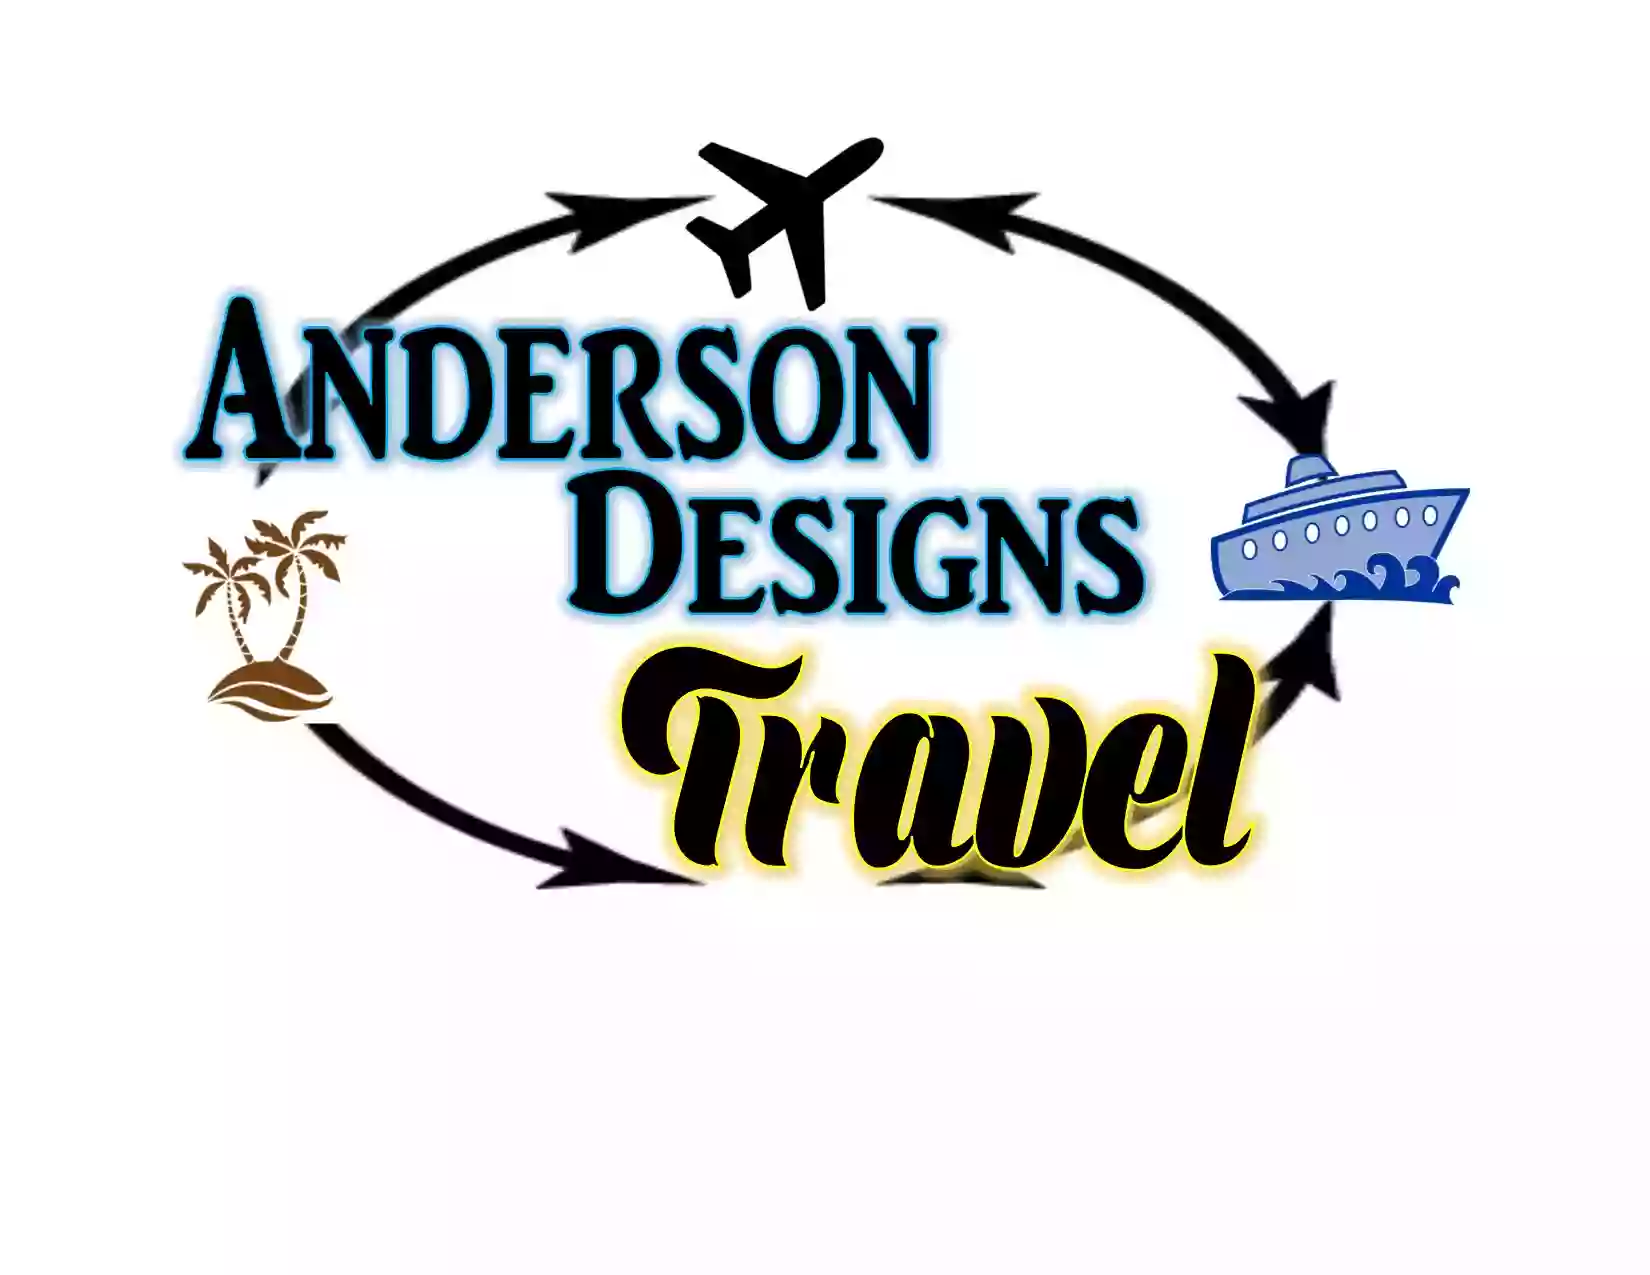 Anderson Designs Travel